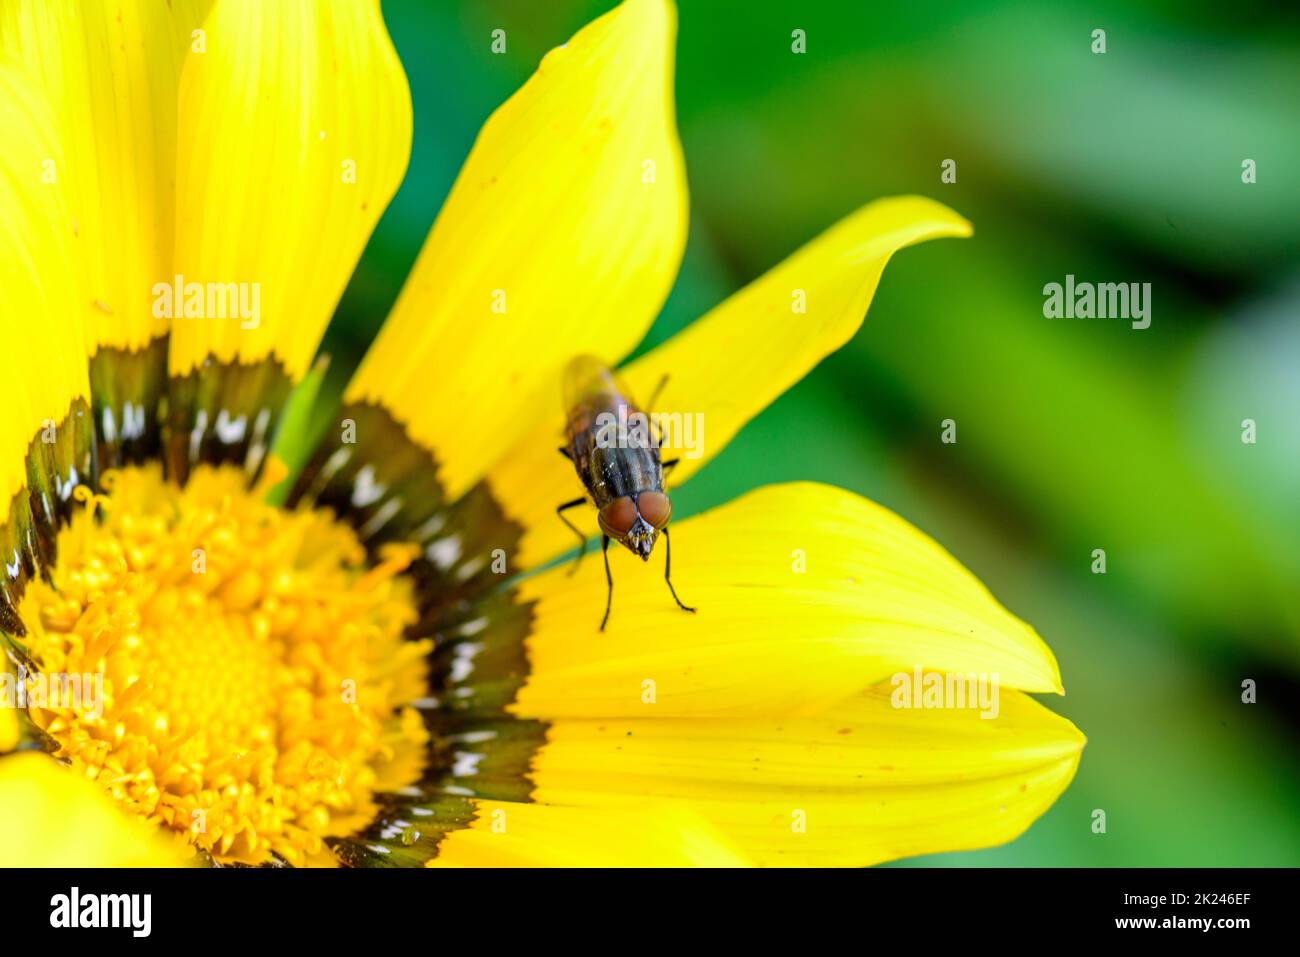 mosca posada en la flor amarilla Stock Photo